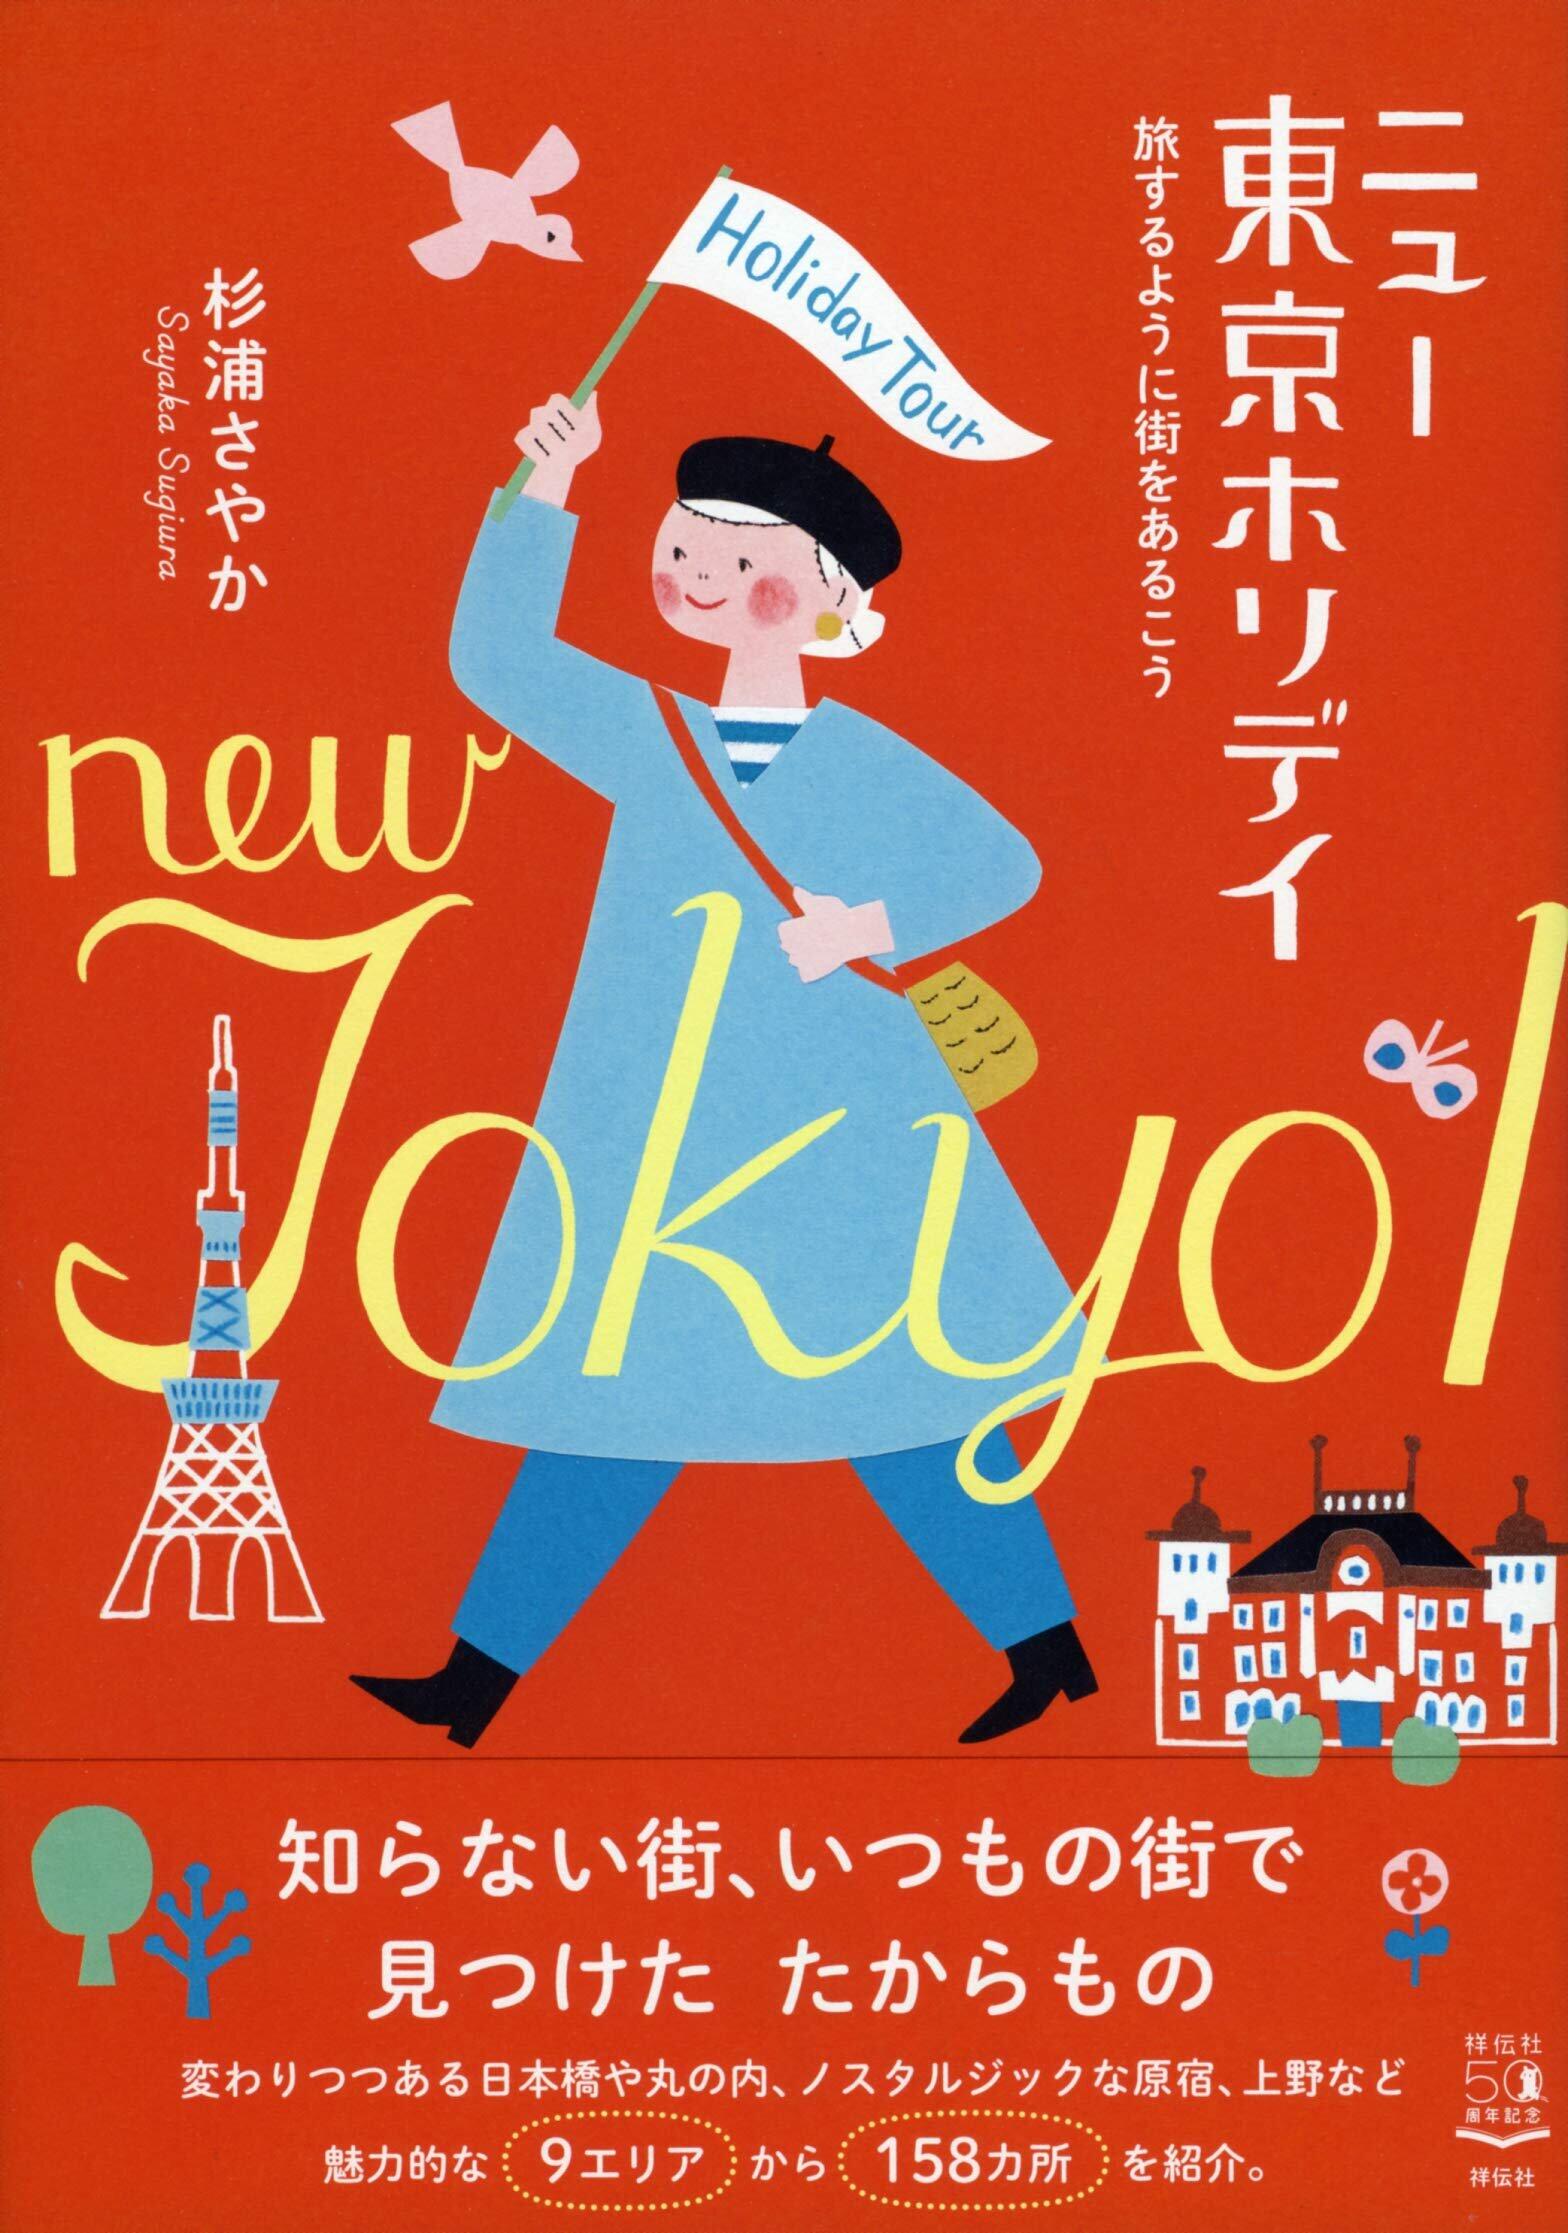 『ニュー東京ホリデイ――旅するように街をあるこう』